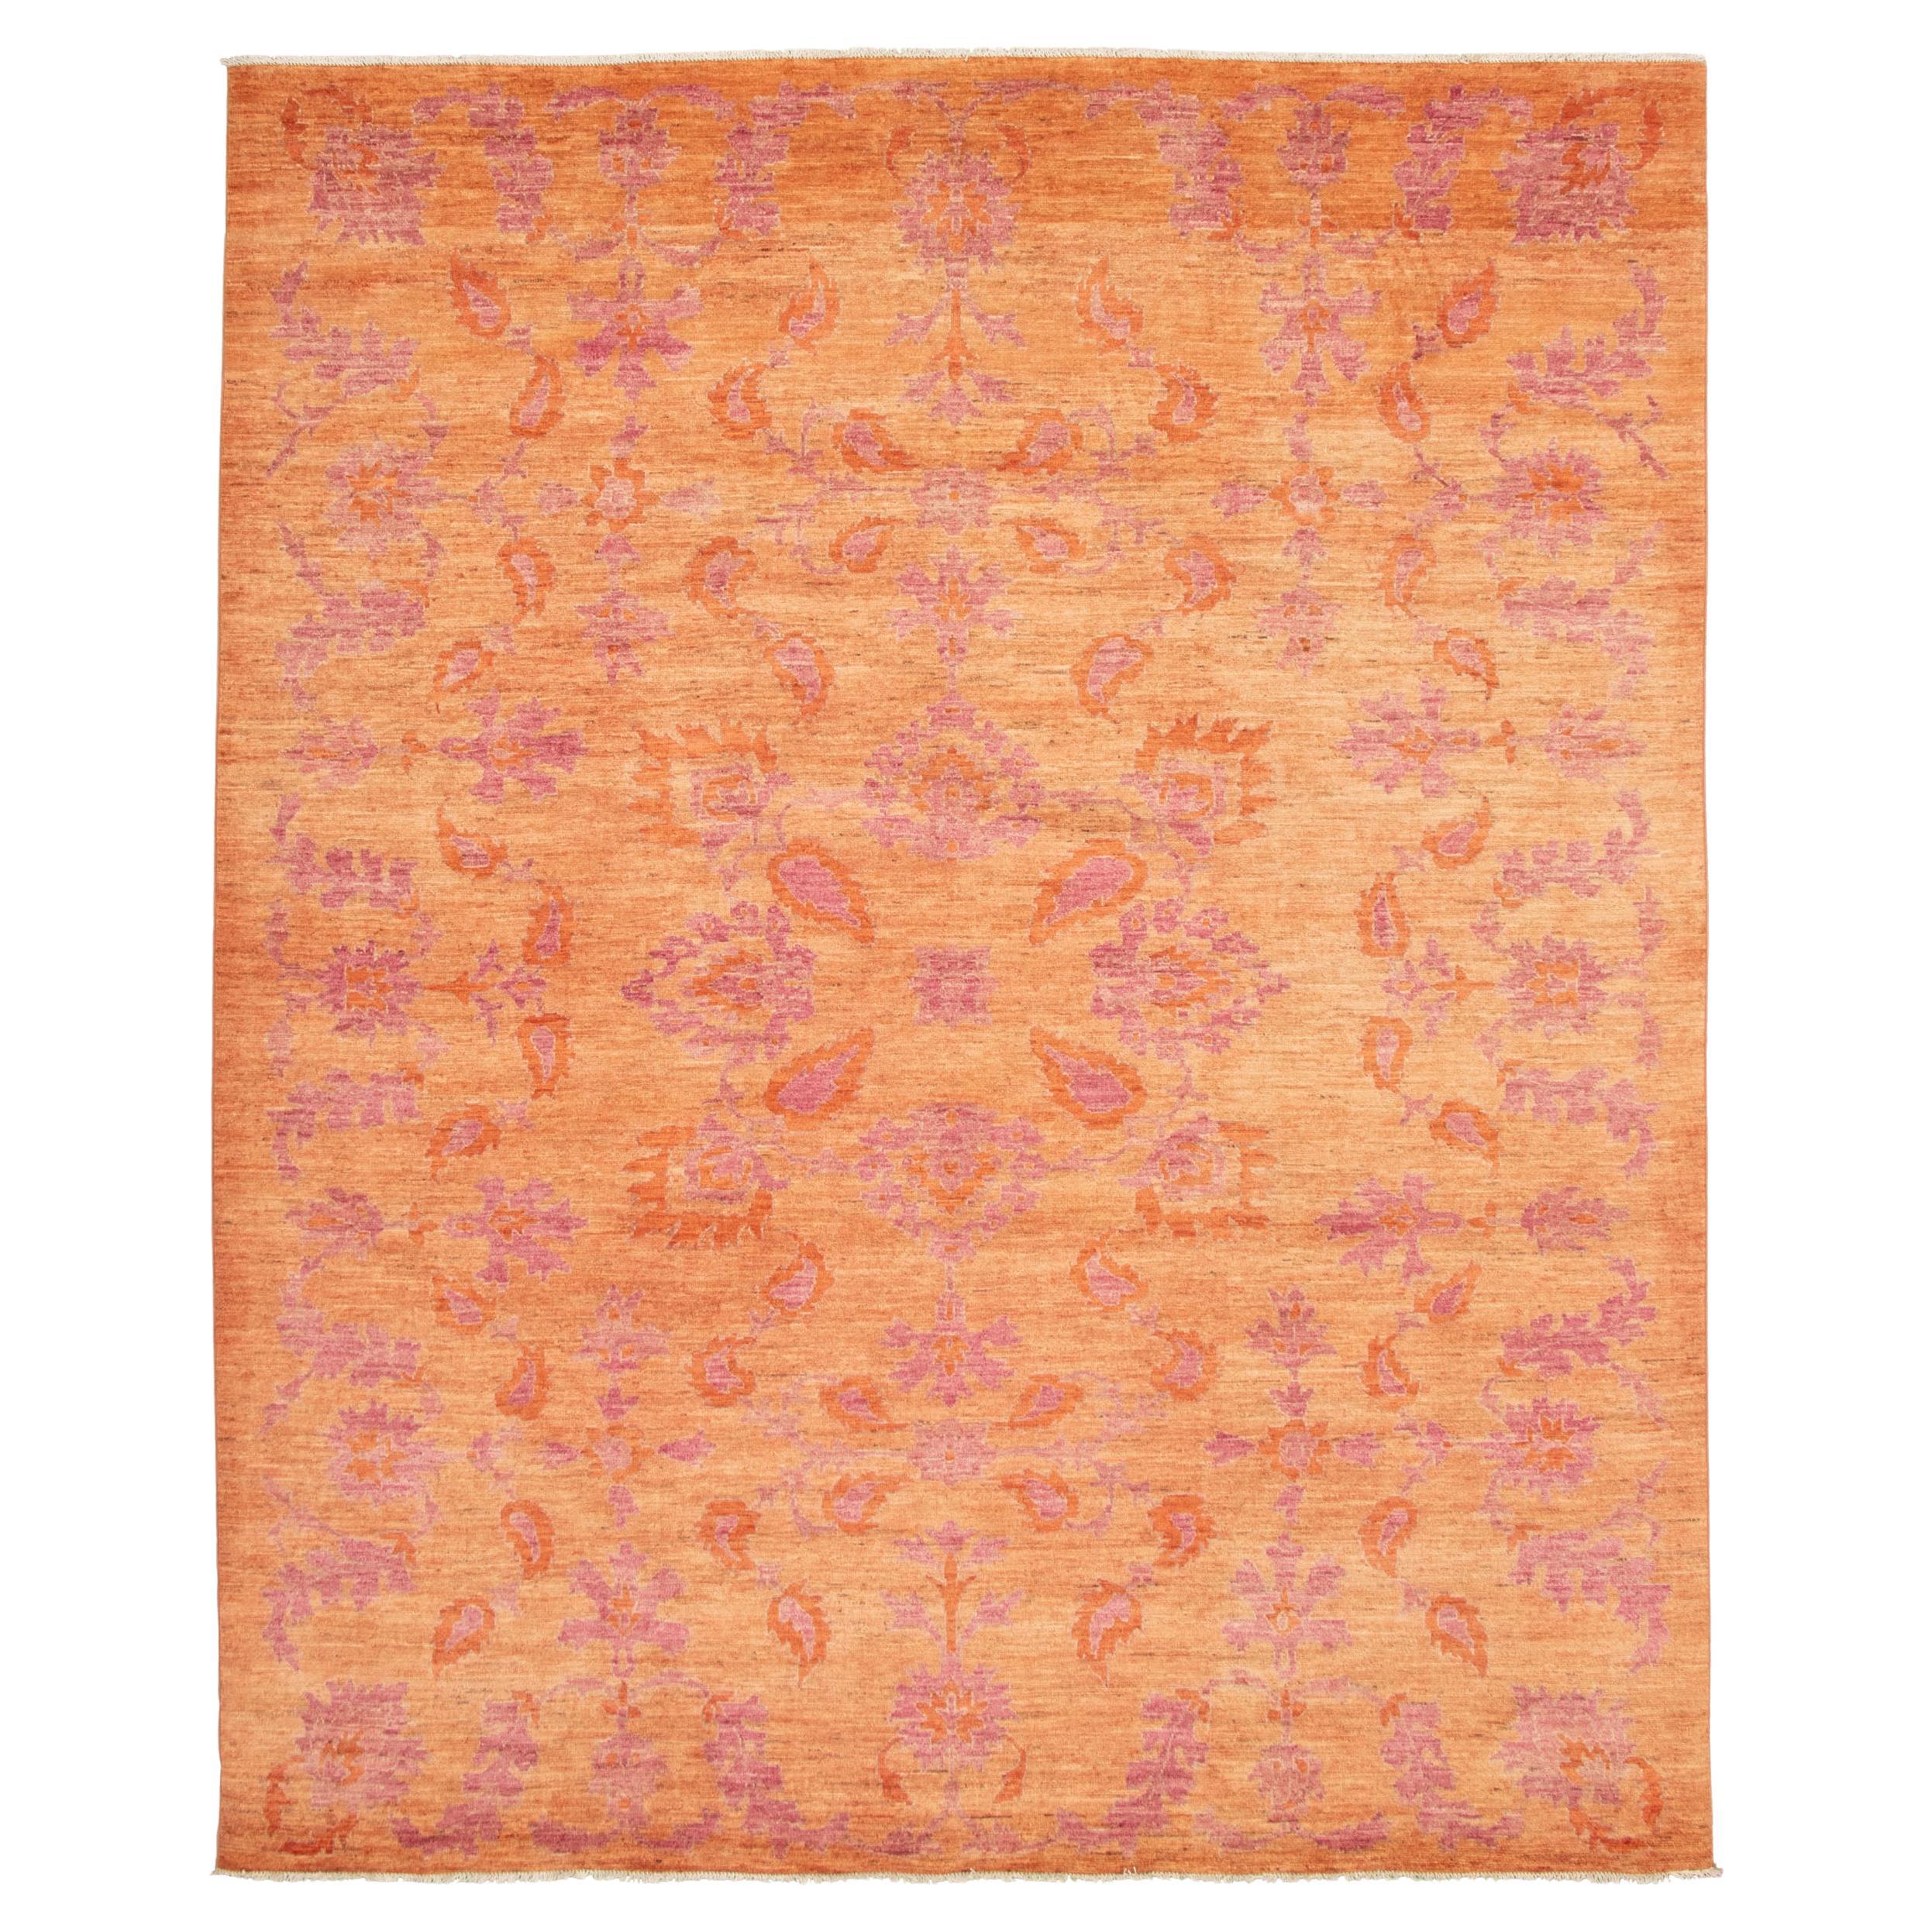 Fine Persian Oushak Rug, Pink & Orange, Transitional Floral Design - 10'x14'